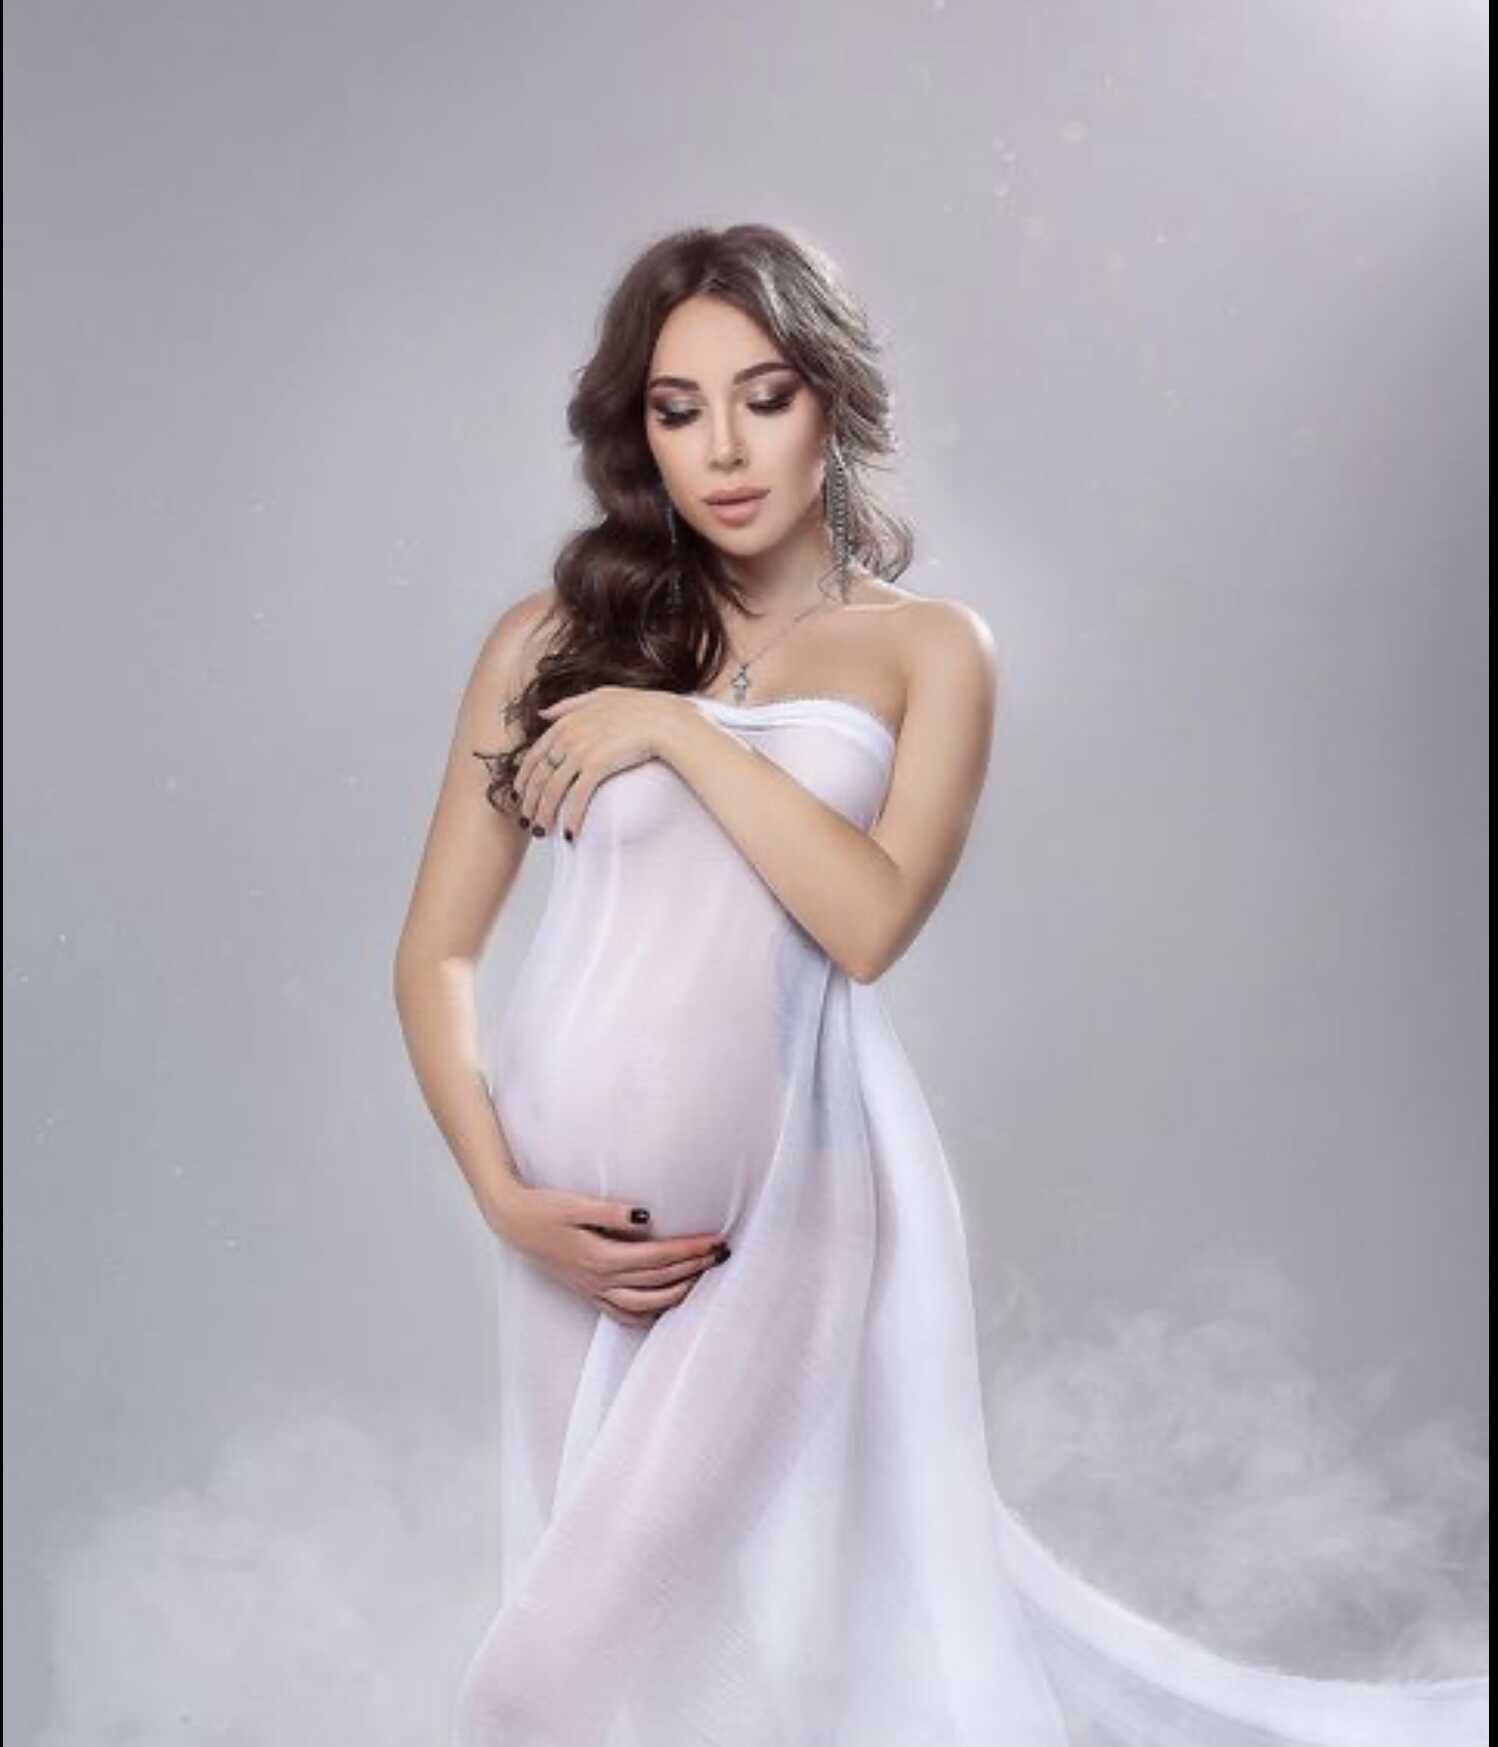 «Откуда?»: беременный живот Алёны Рапунцель навёл её поклонниц на странные подозрения